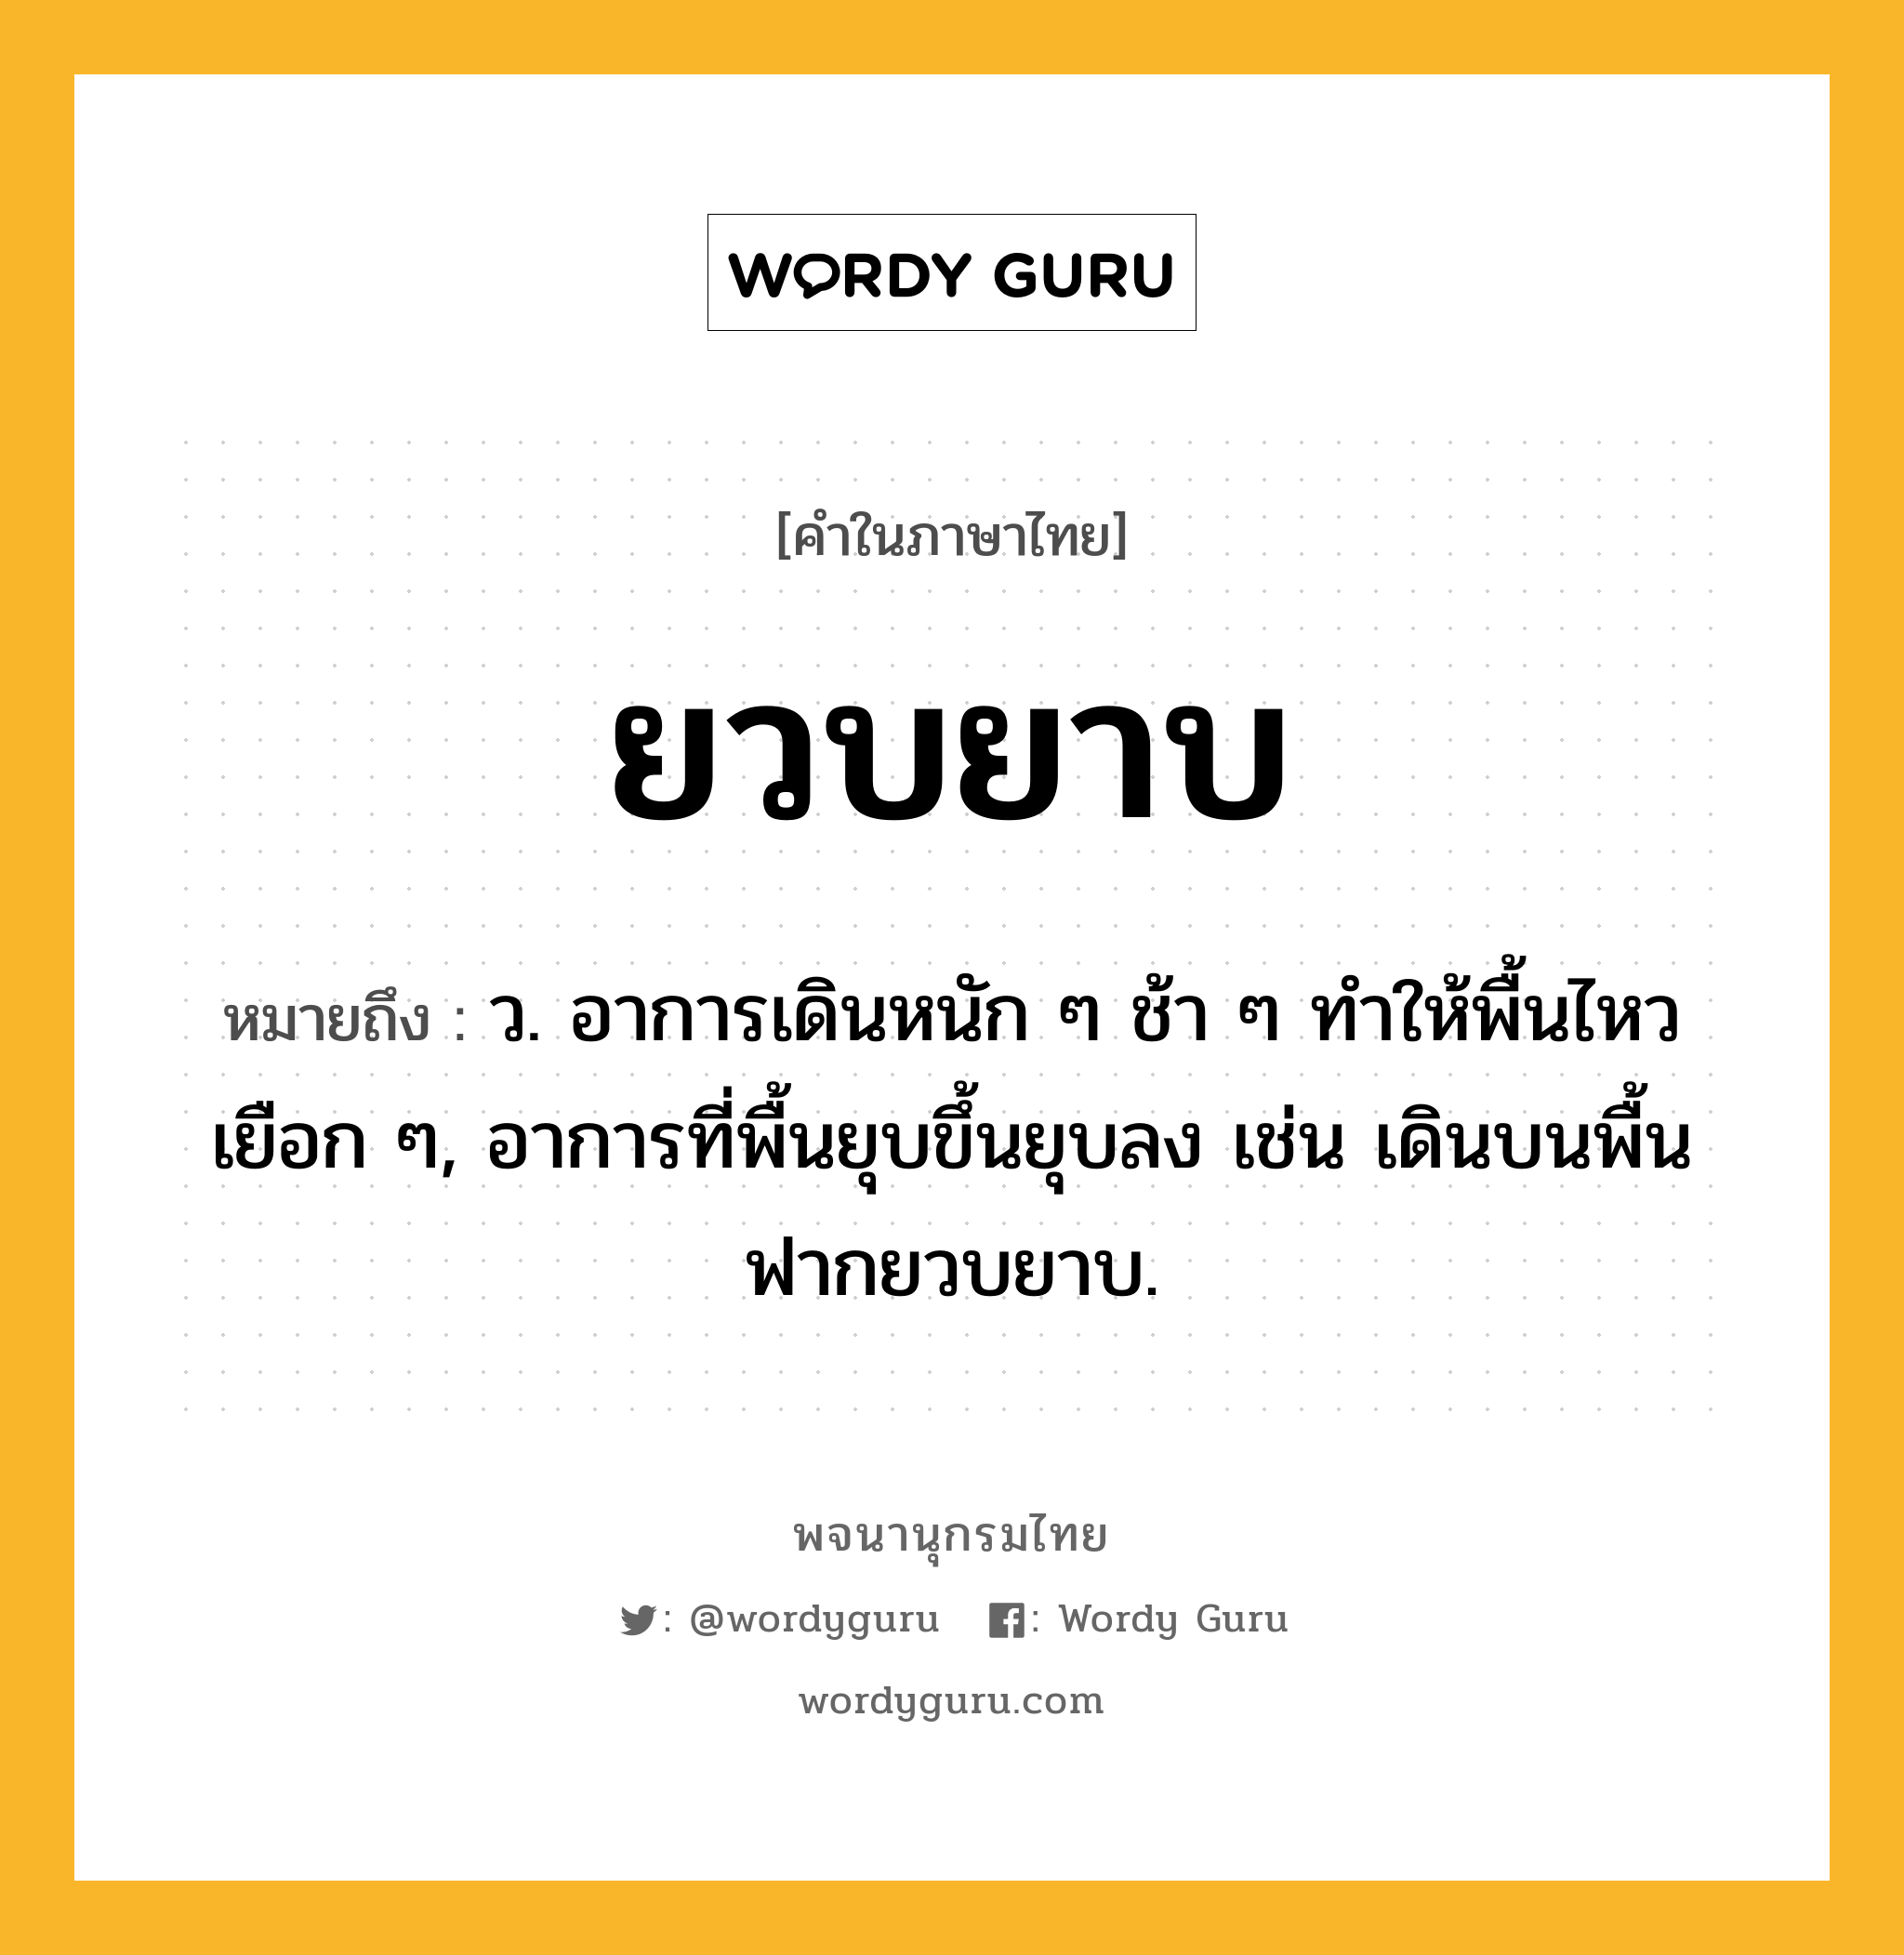 ยวบยาบ ความหมาย หมายถึงอะไร?, คำในภาษาไทย ยวบยาบ หมายถึง ว. อาการเดินหนัก ๆ ช้า ๆ ทําให้พื้นไหวเยือก ๆ, อาการที่พื้นยุบขึ้นยุบลง เช่น เดินบนพื้นฟากยวบยาบ.